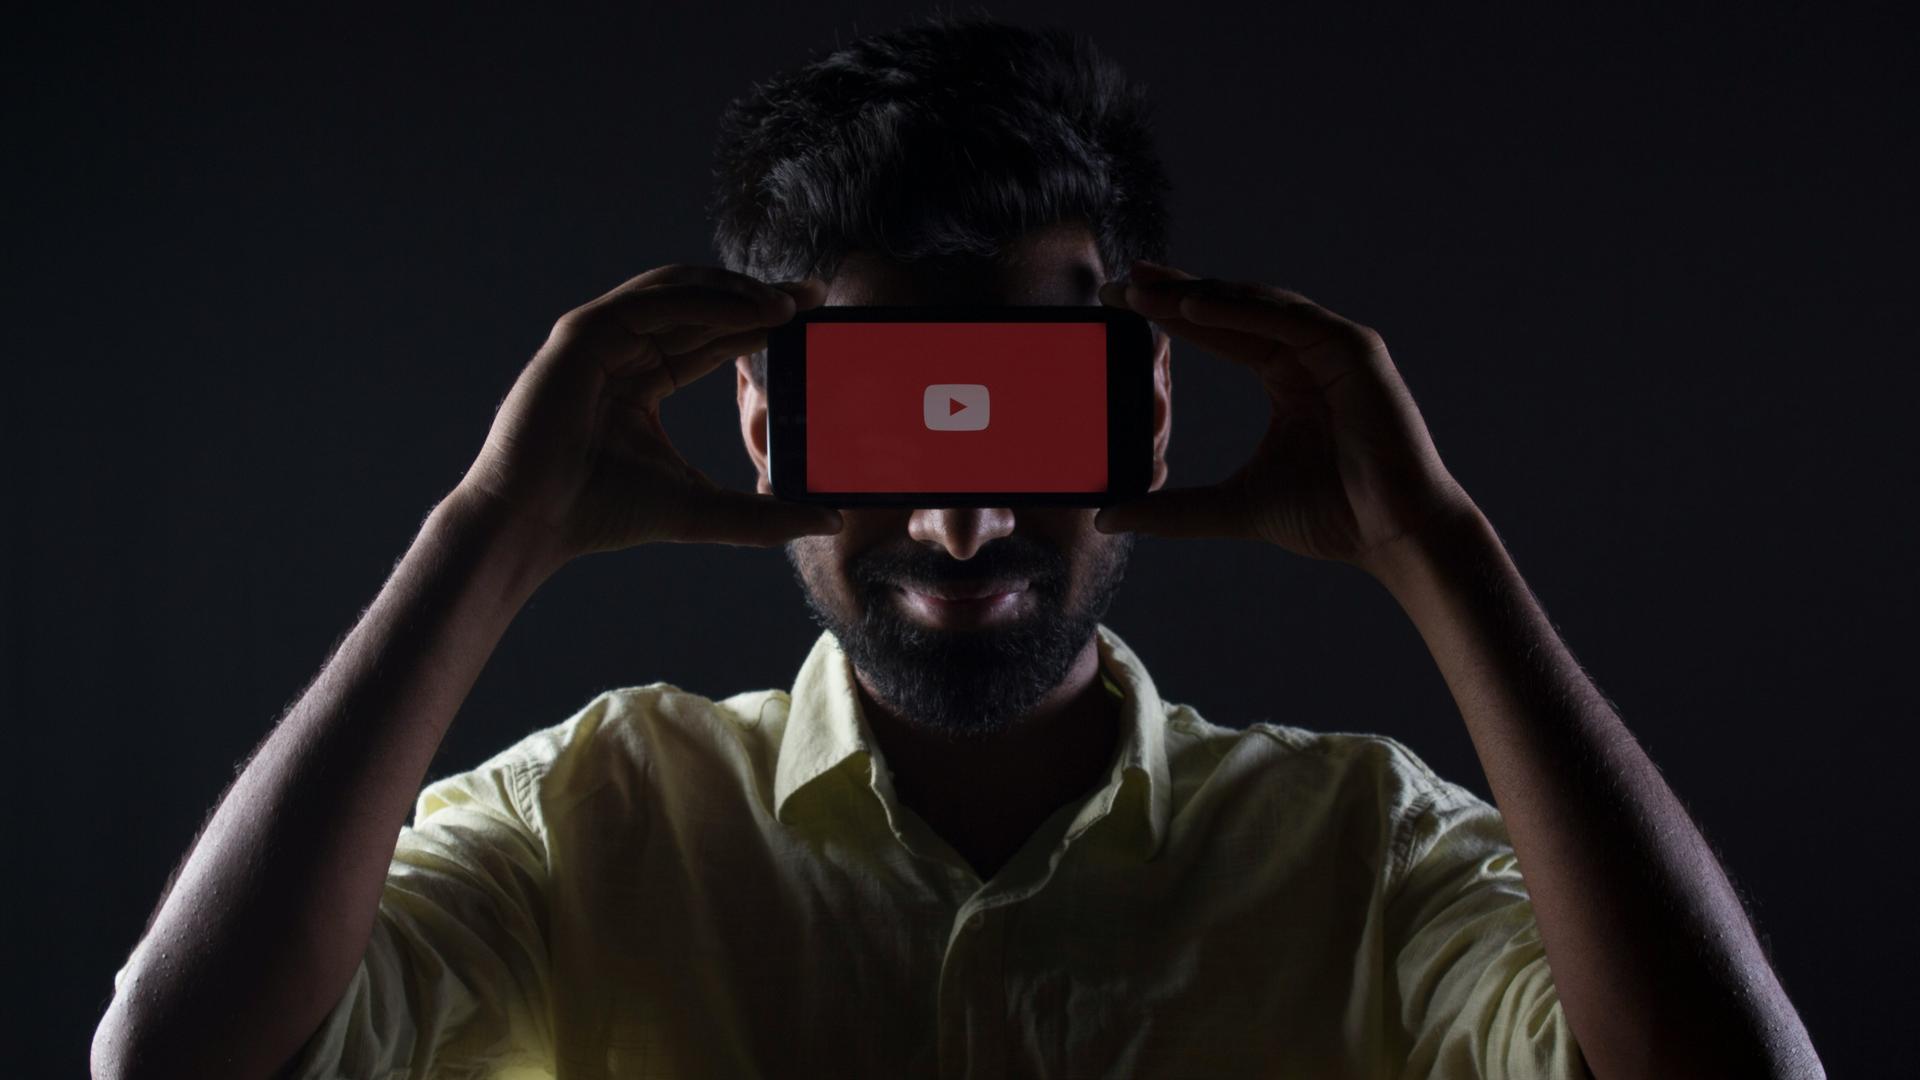 Ein dunkelhaariger Mann mit hellem Hemd hält sich in einem dunklen Raum ein Handy wie eine Maske vor die Augen, auf dem ein roter Playbutton zu sehen ist. 